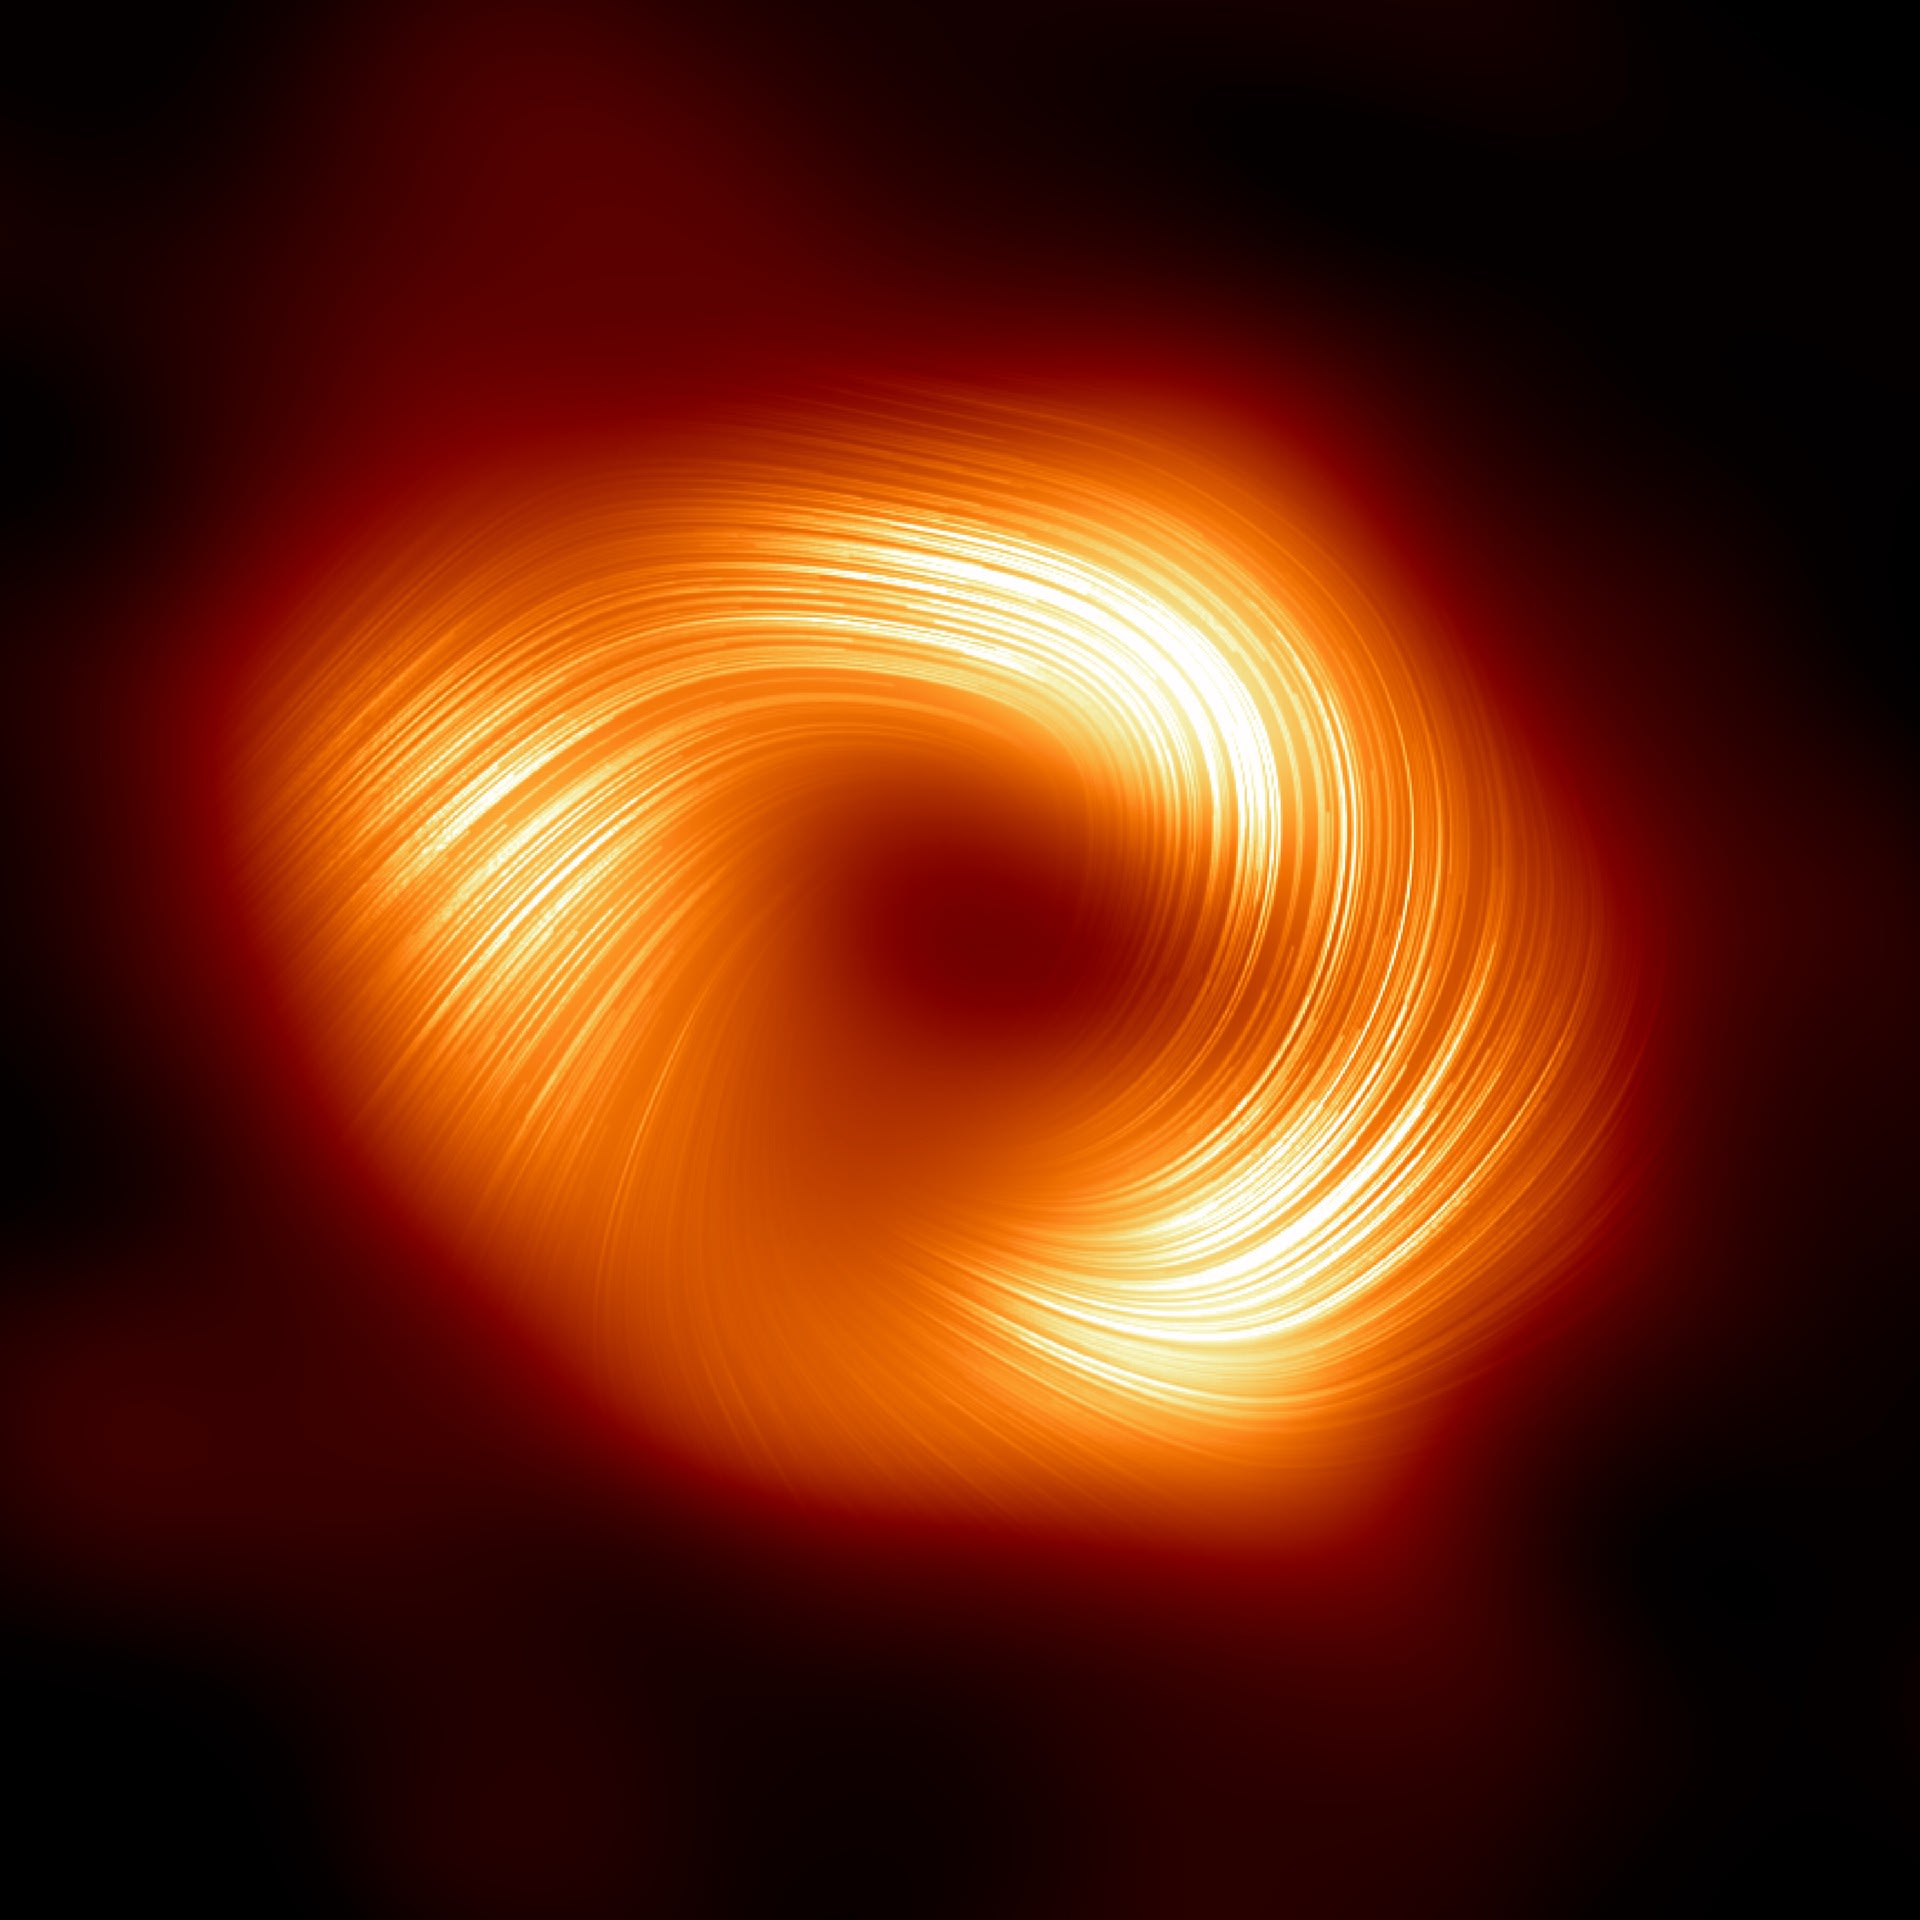 図1．天の川銀河中心の超大質量ブラックホール“いて座A*（いてざエースター）”の偏光画像。国際研究チーム“イベント・ホライズン・テレスコープ（EHT）コラボレーション”は、2022年に天の川銀河中心の超大質量ブラックホールの史上初の画像を公開。本成果により、この超大質量ブラックホールの新たな姿が偏光でとらえられた。この画像は天の川銀河の超大質量ブラックホール周囲の偏光を示している。天の川銀河中心の超大質量ブラックホールのこれほど近傍に、磁場の構造を映し出す偏光がとらえられたのは史上初めてのこと。線は偏光の方向を示していて、ブラックホール周囲の磁場に関係している。（Credit: EHT Collaboration）